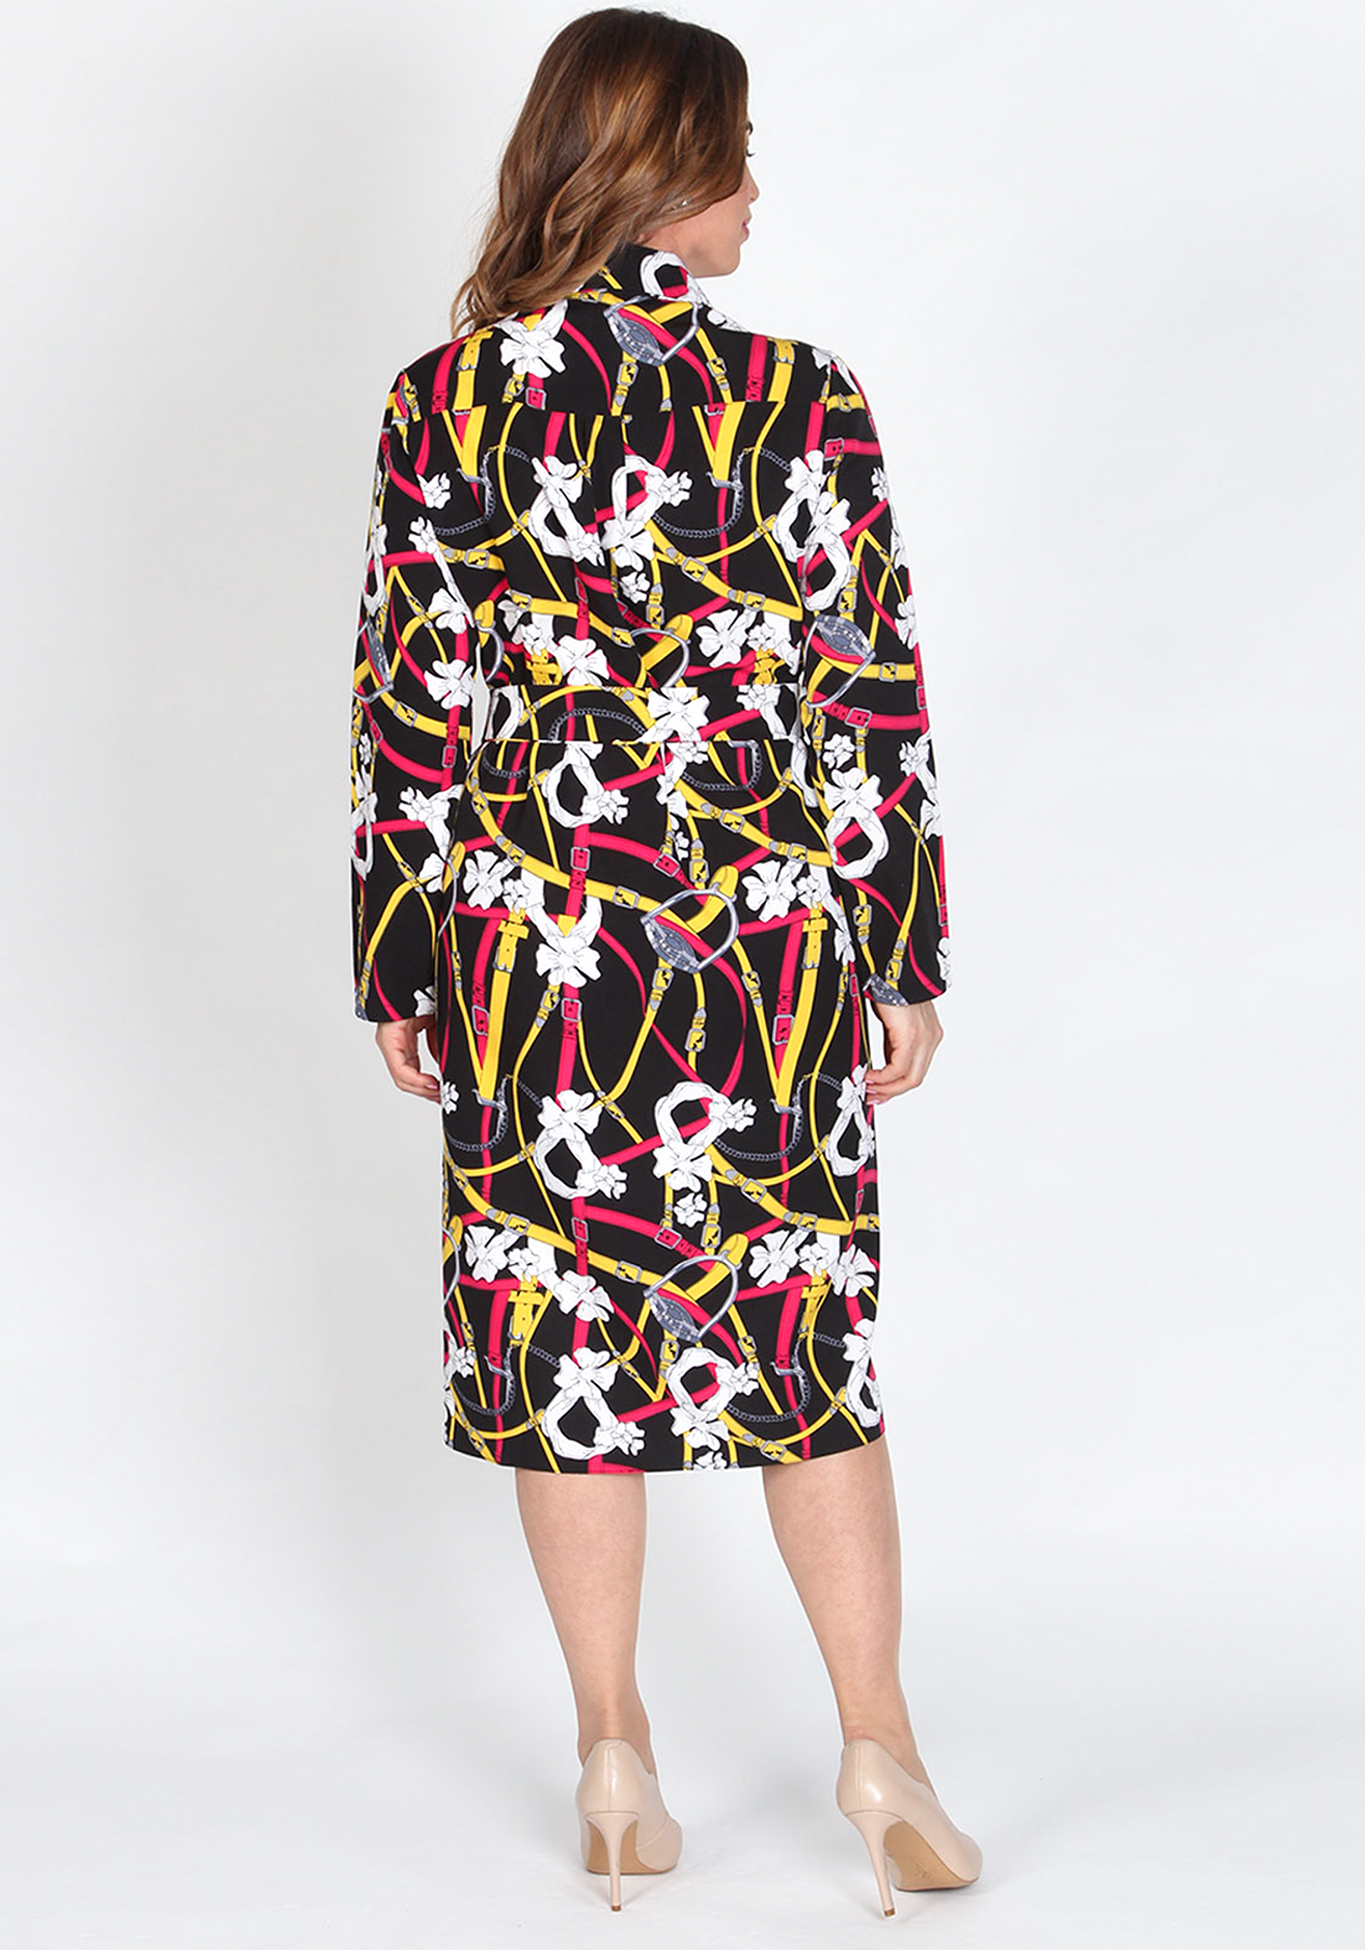 Платье-трансформер «Шик-модерн» Kumar collection, размер 50, цвет черный мультиколор - фото 5